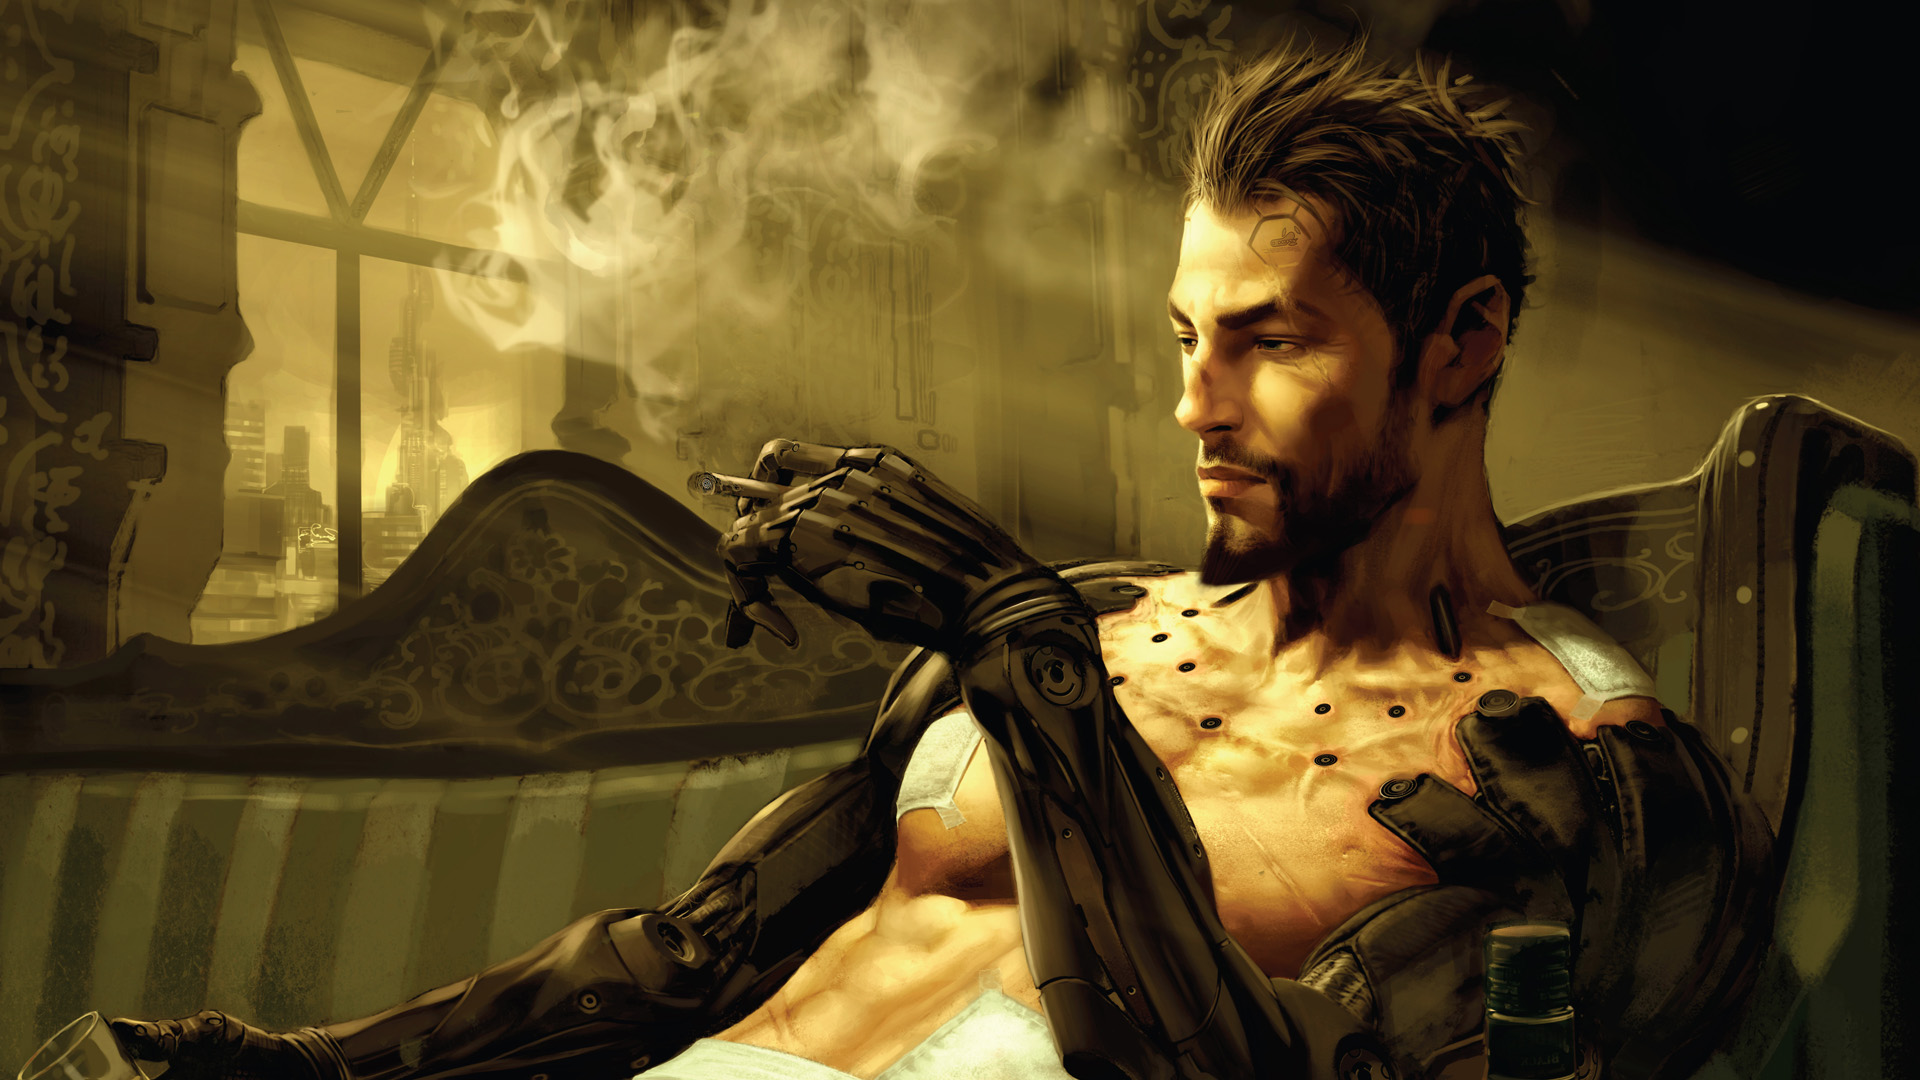 Deus Ex: Human Revolution HD Wallpaper